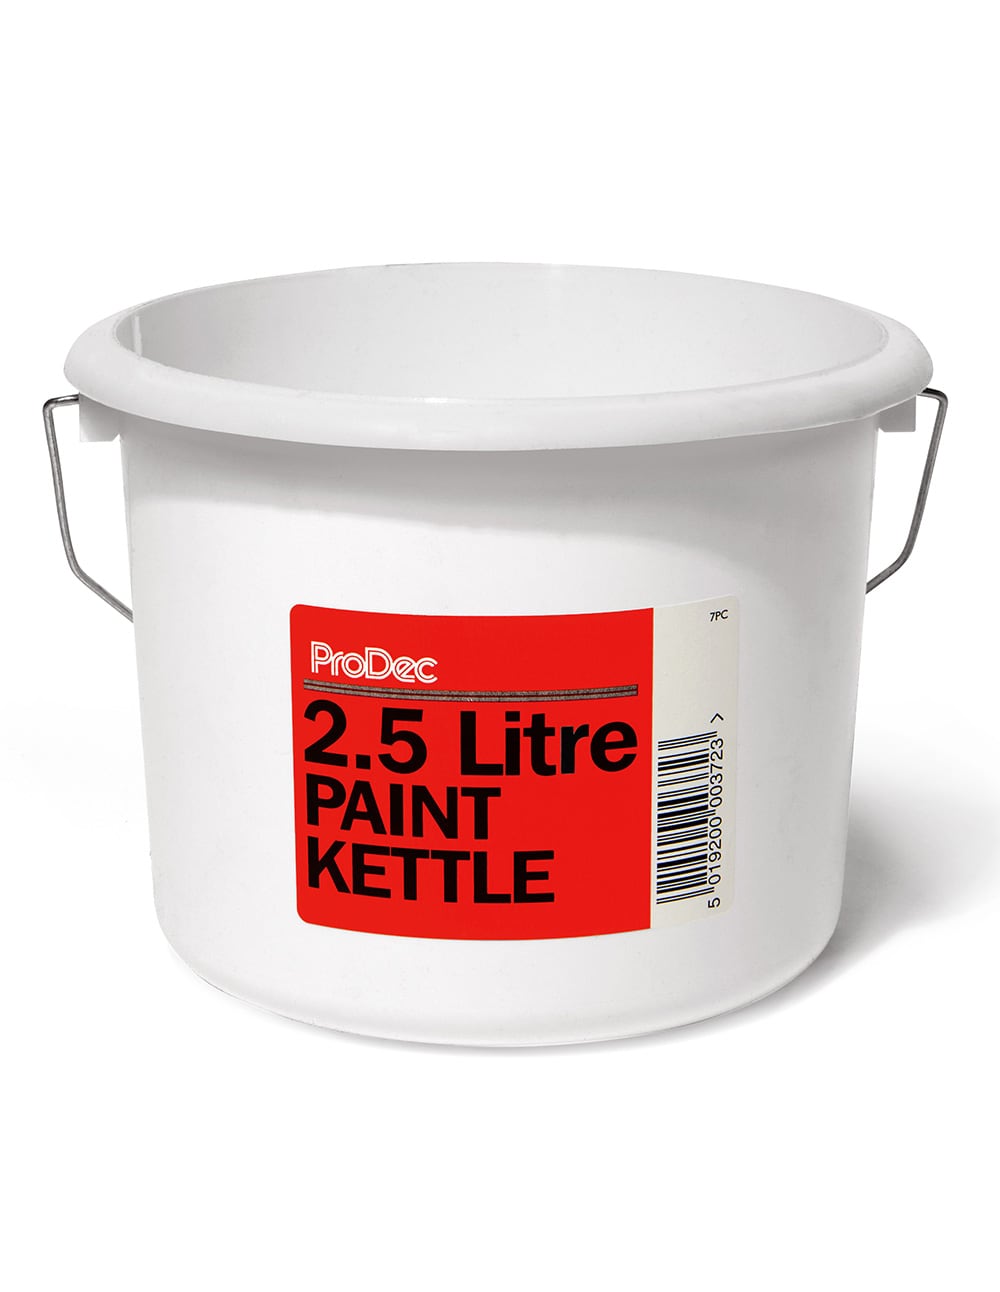 STANLEY - Plastic Paint Kettle 2.5 litre